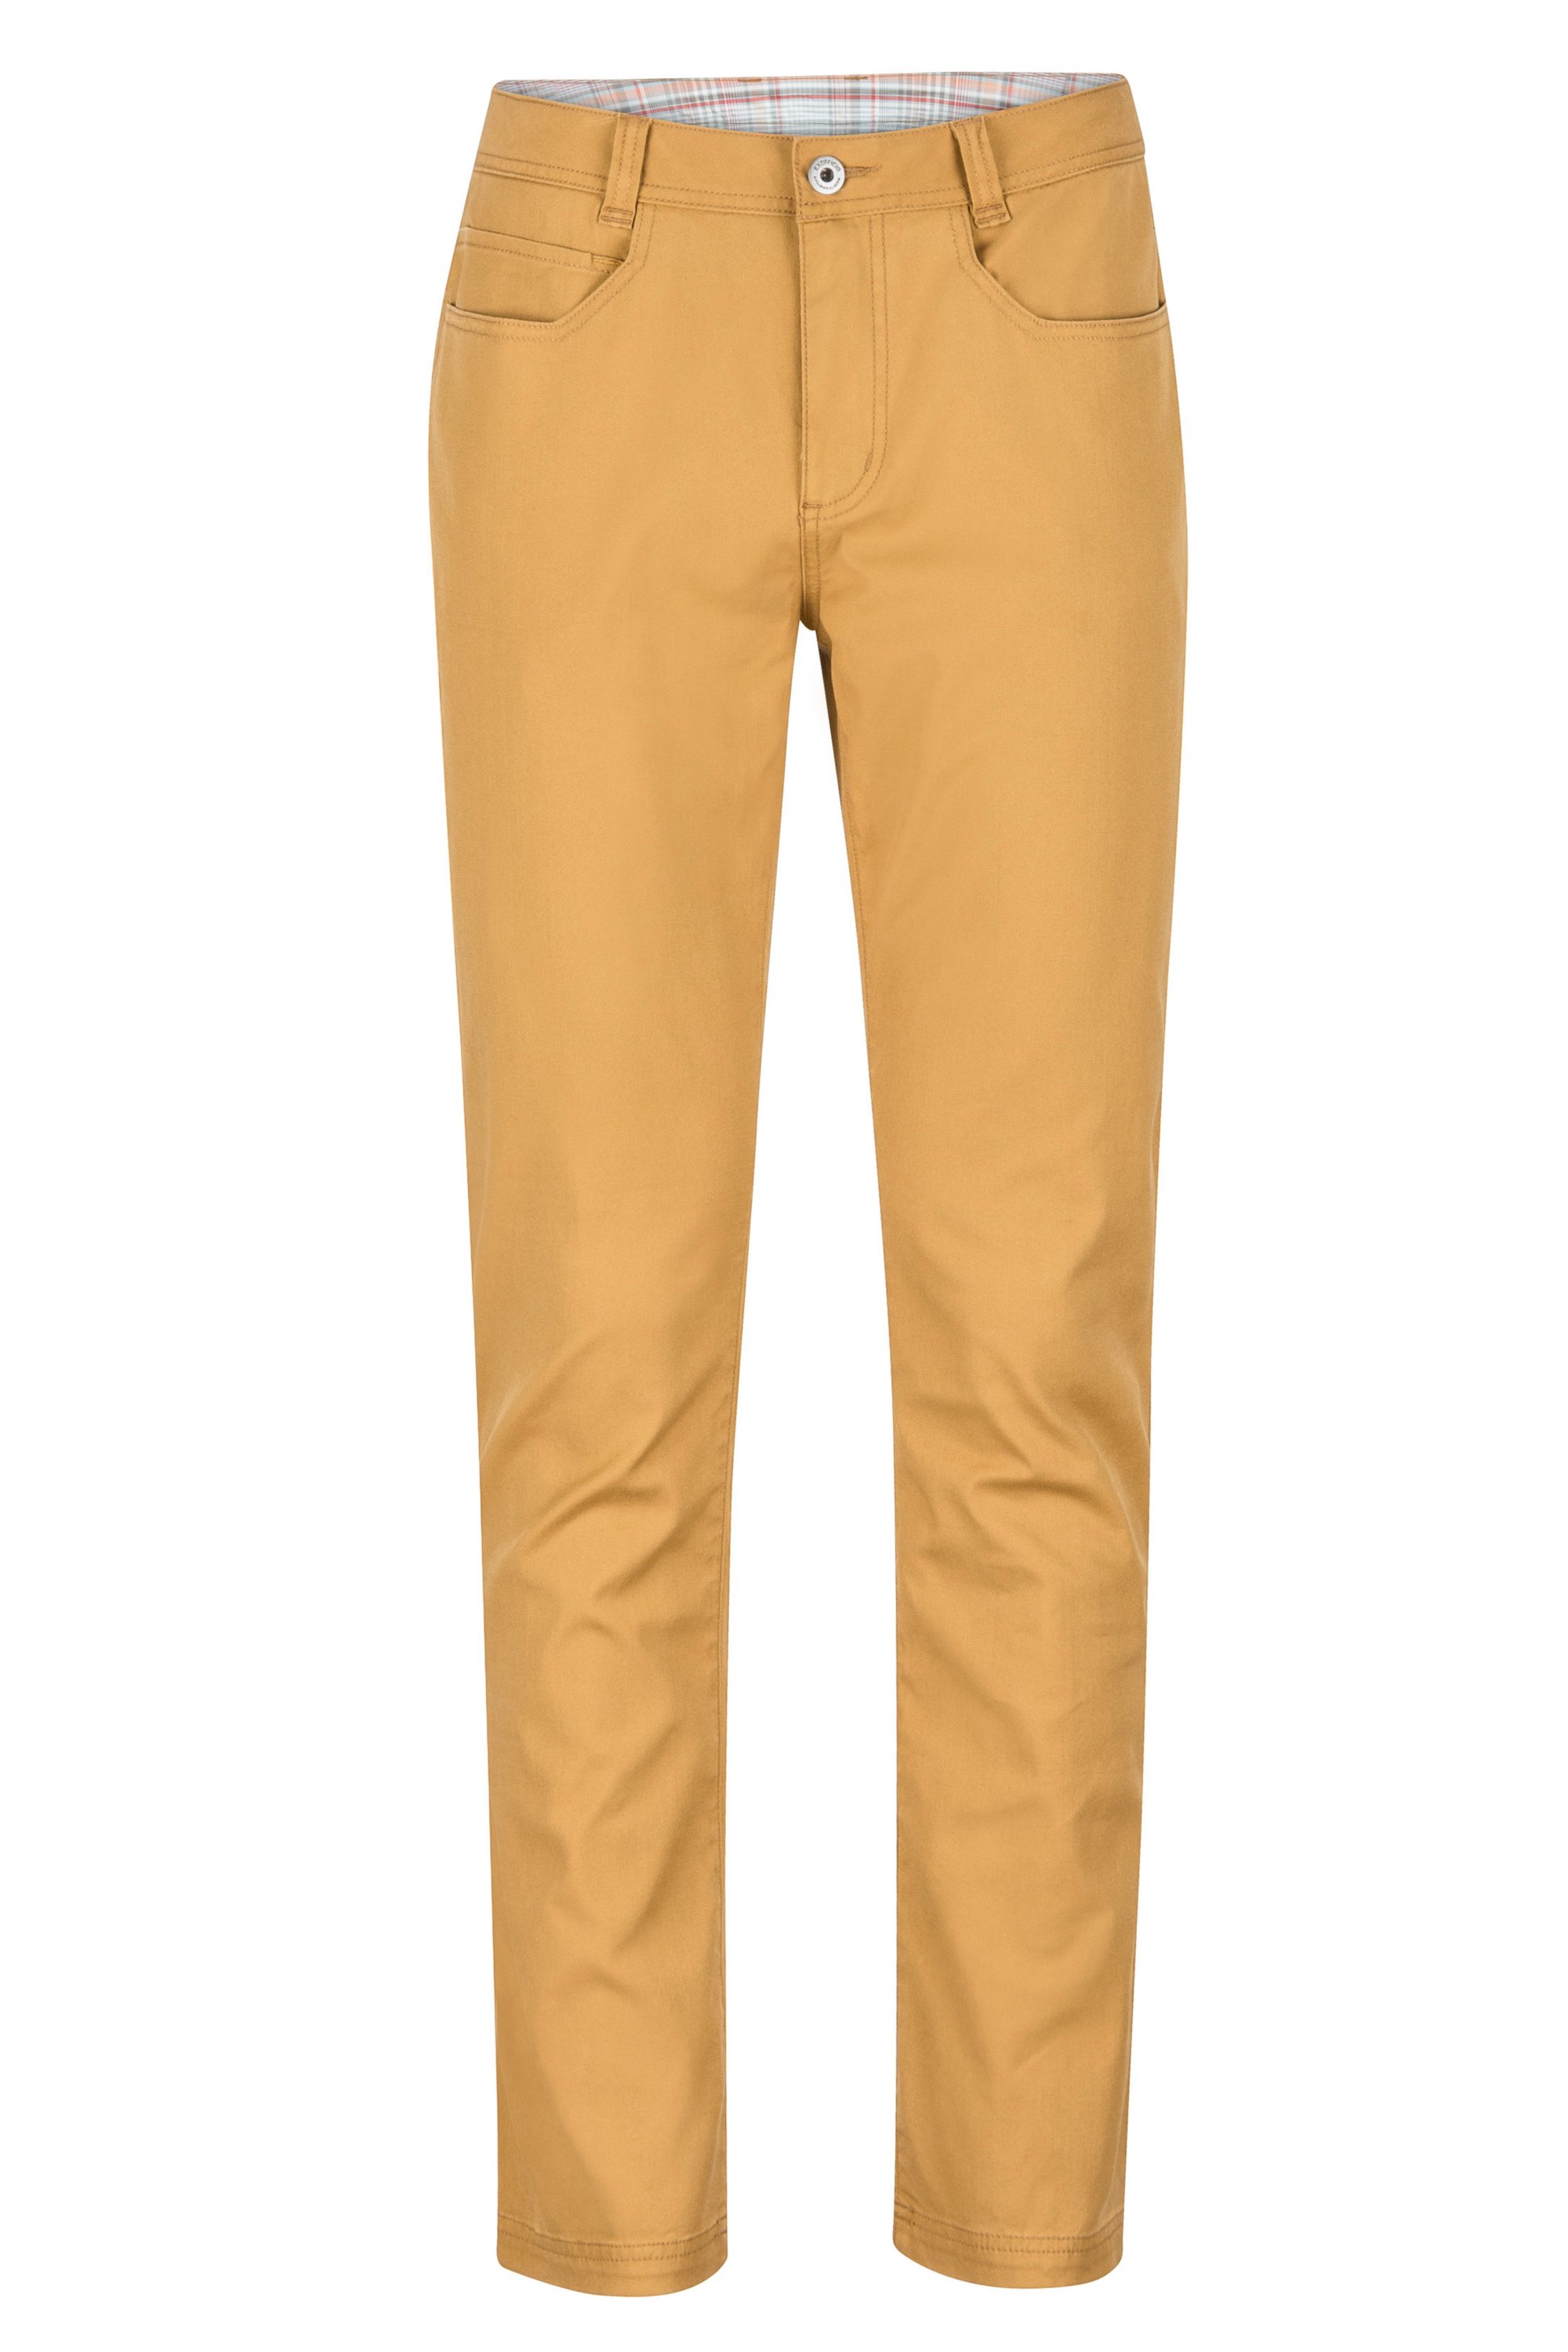 EX Officio Men's Khaki Amphi Convertible Pants 36 Regular